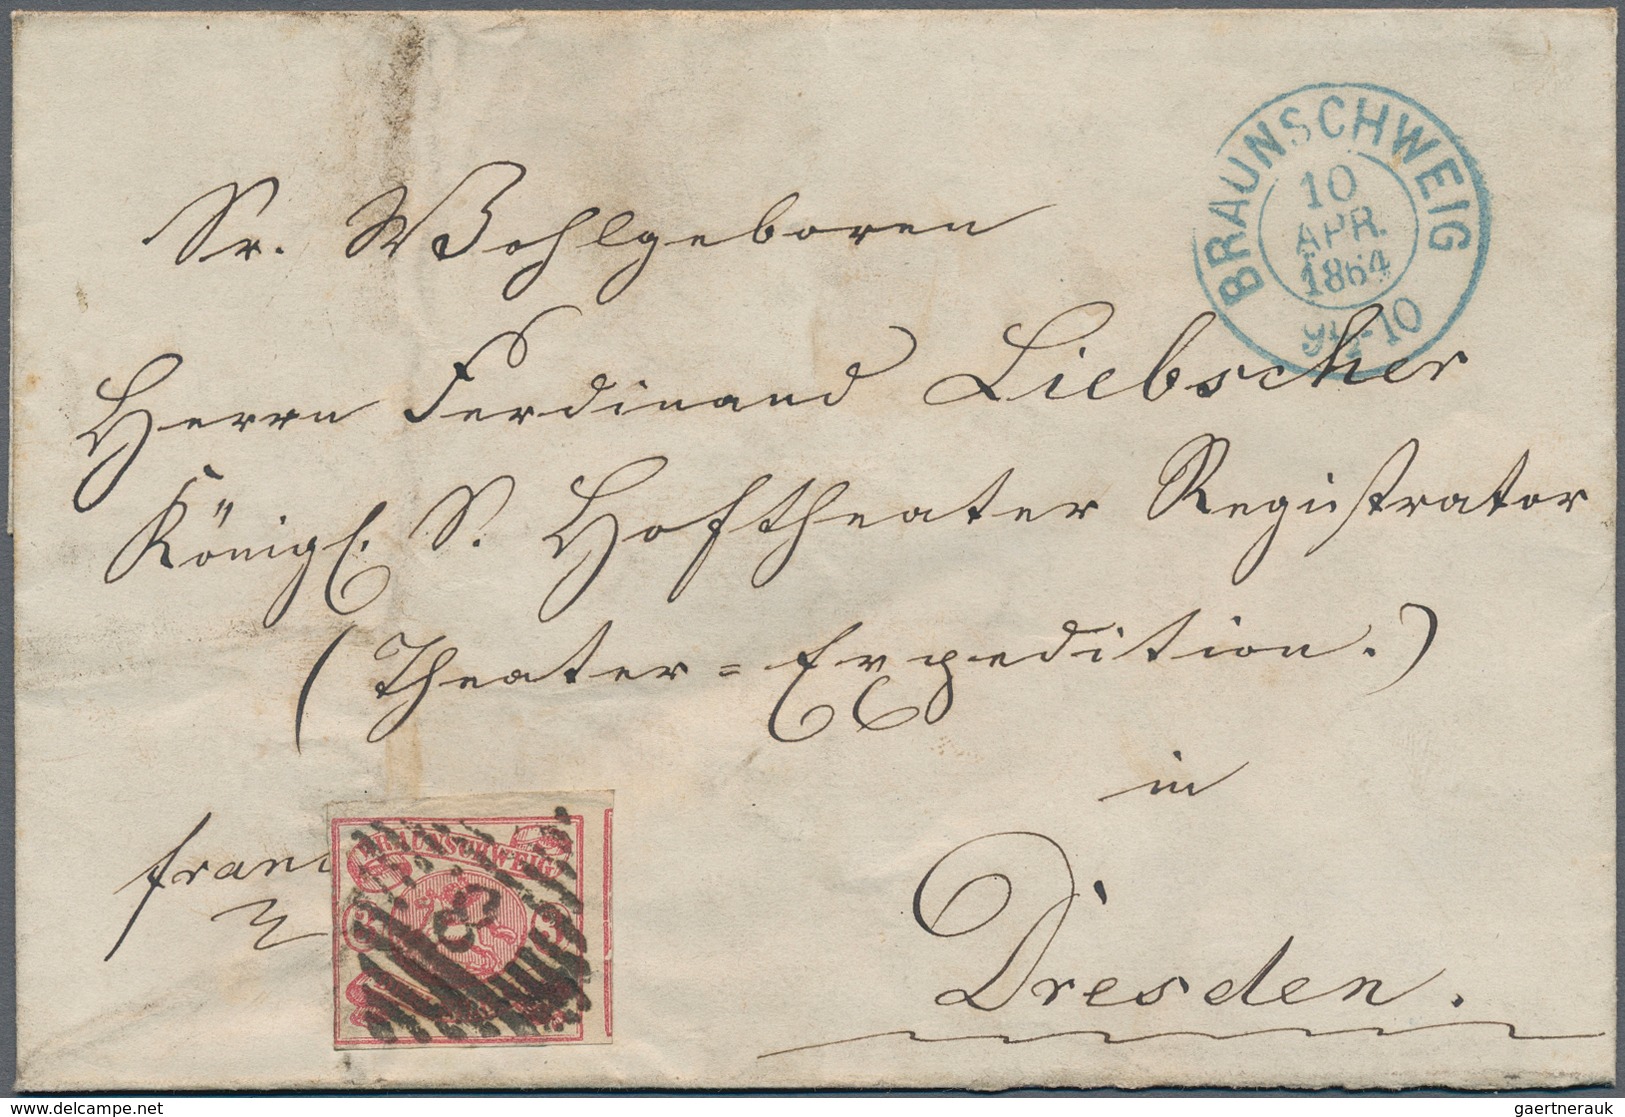 Nachlässe: 1850/1930, Sammlernachlaß mit ca. 150 Briefen, Teilbriefen und Vorderseiten aus Deutschla